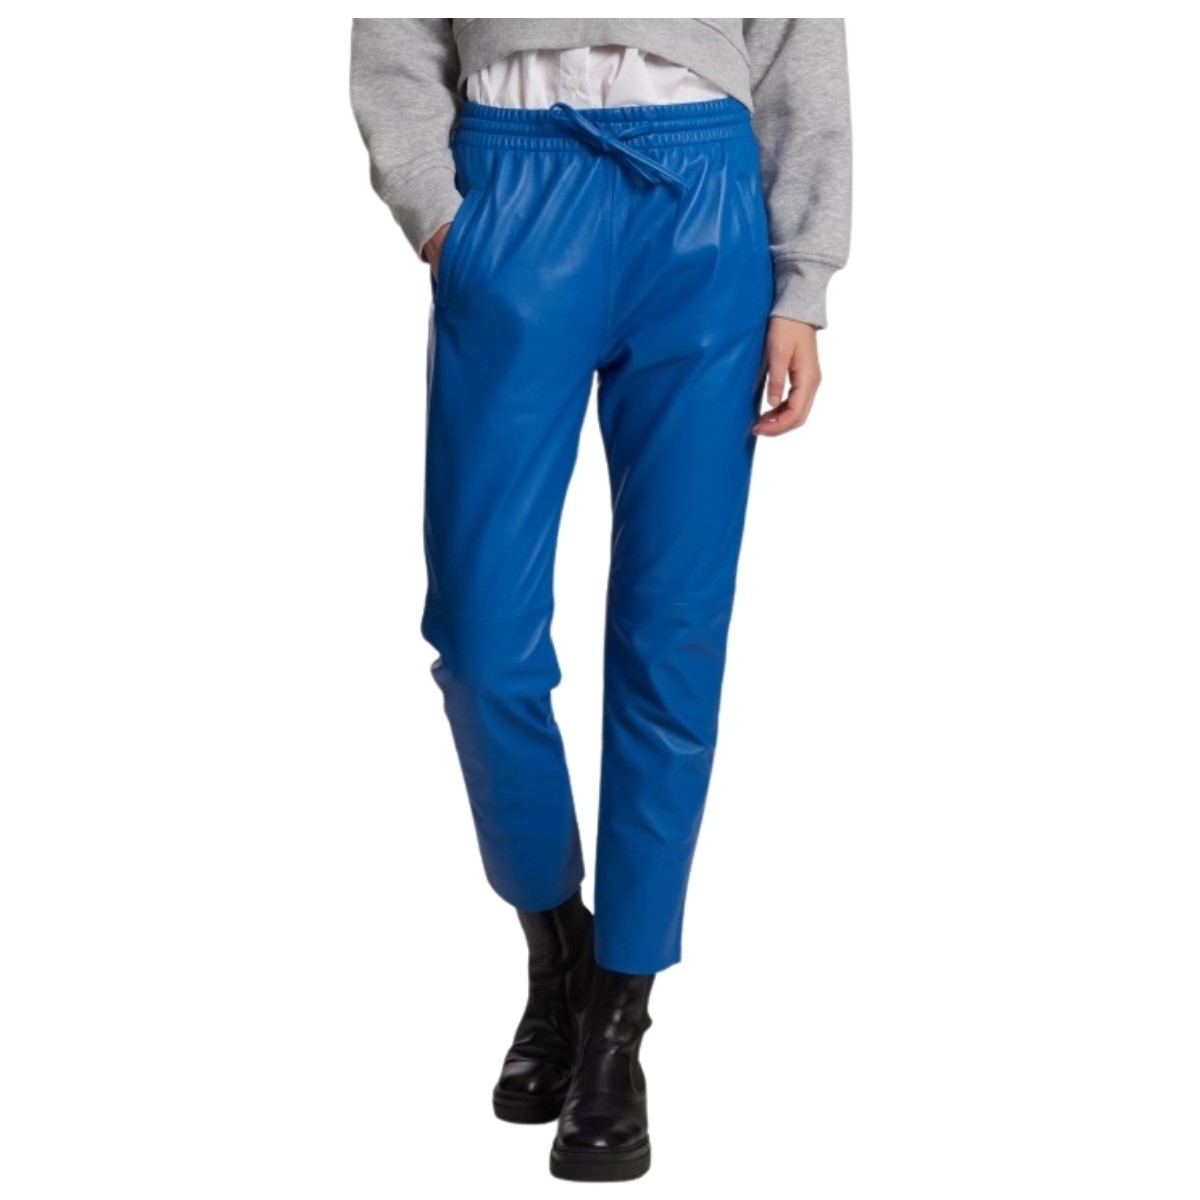 Oakwood Bleu Pantalon jogpant en cuir Gift Ref 50426 Bleu uEinoeVJ